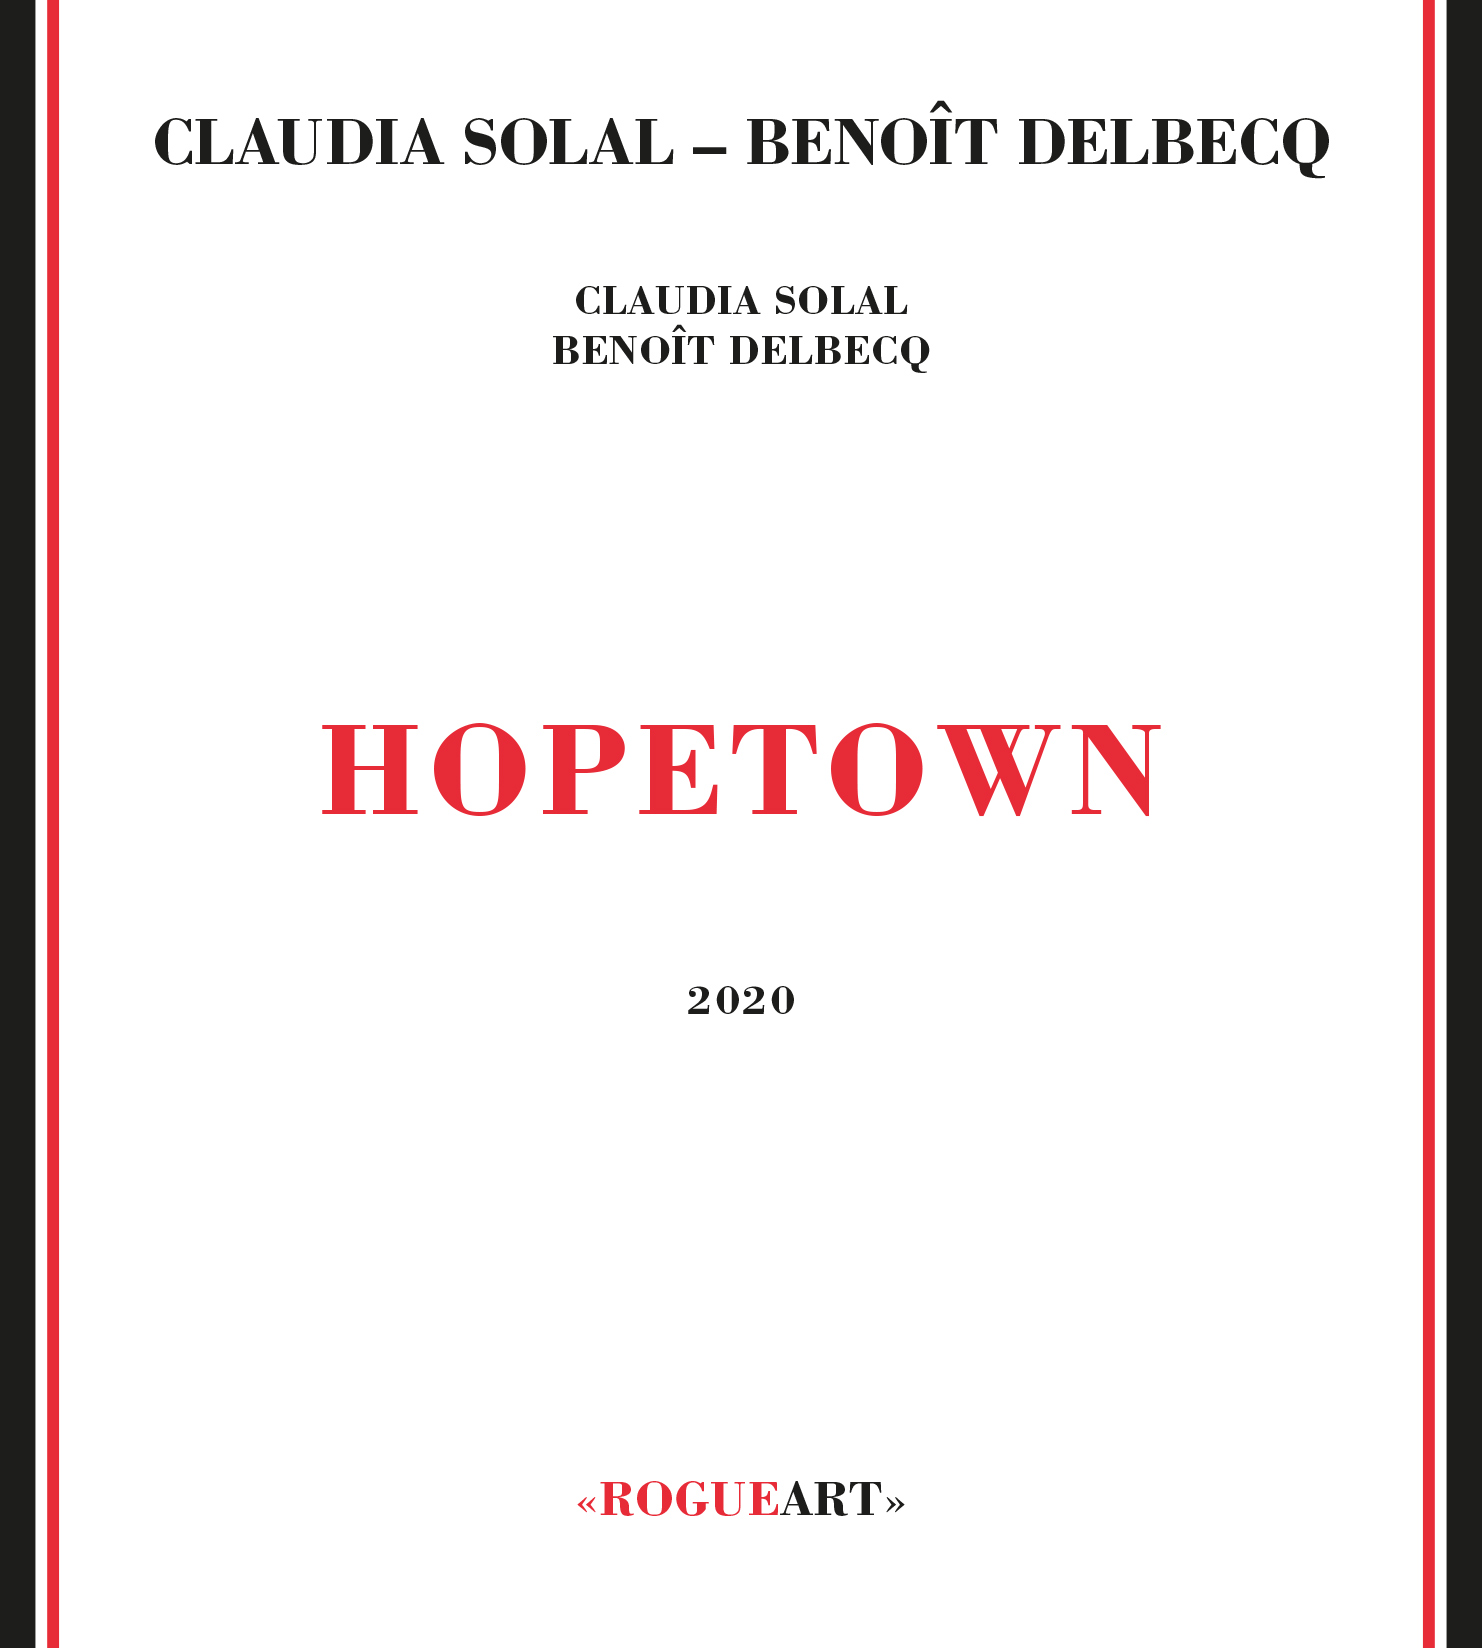 CLAUDIA SOLAL - Claudia Solal - Benoît Delbecq : Hopetown cover 